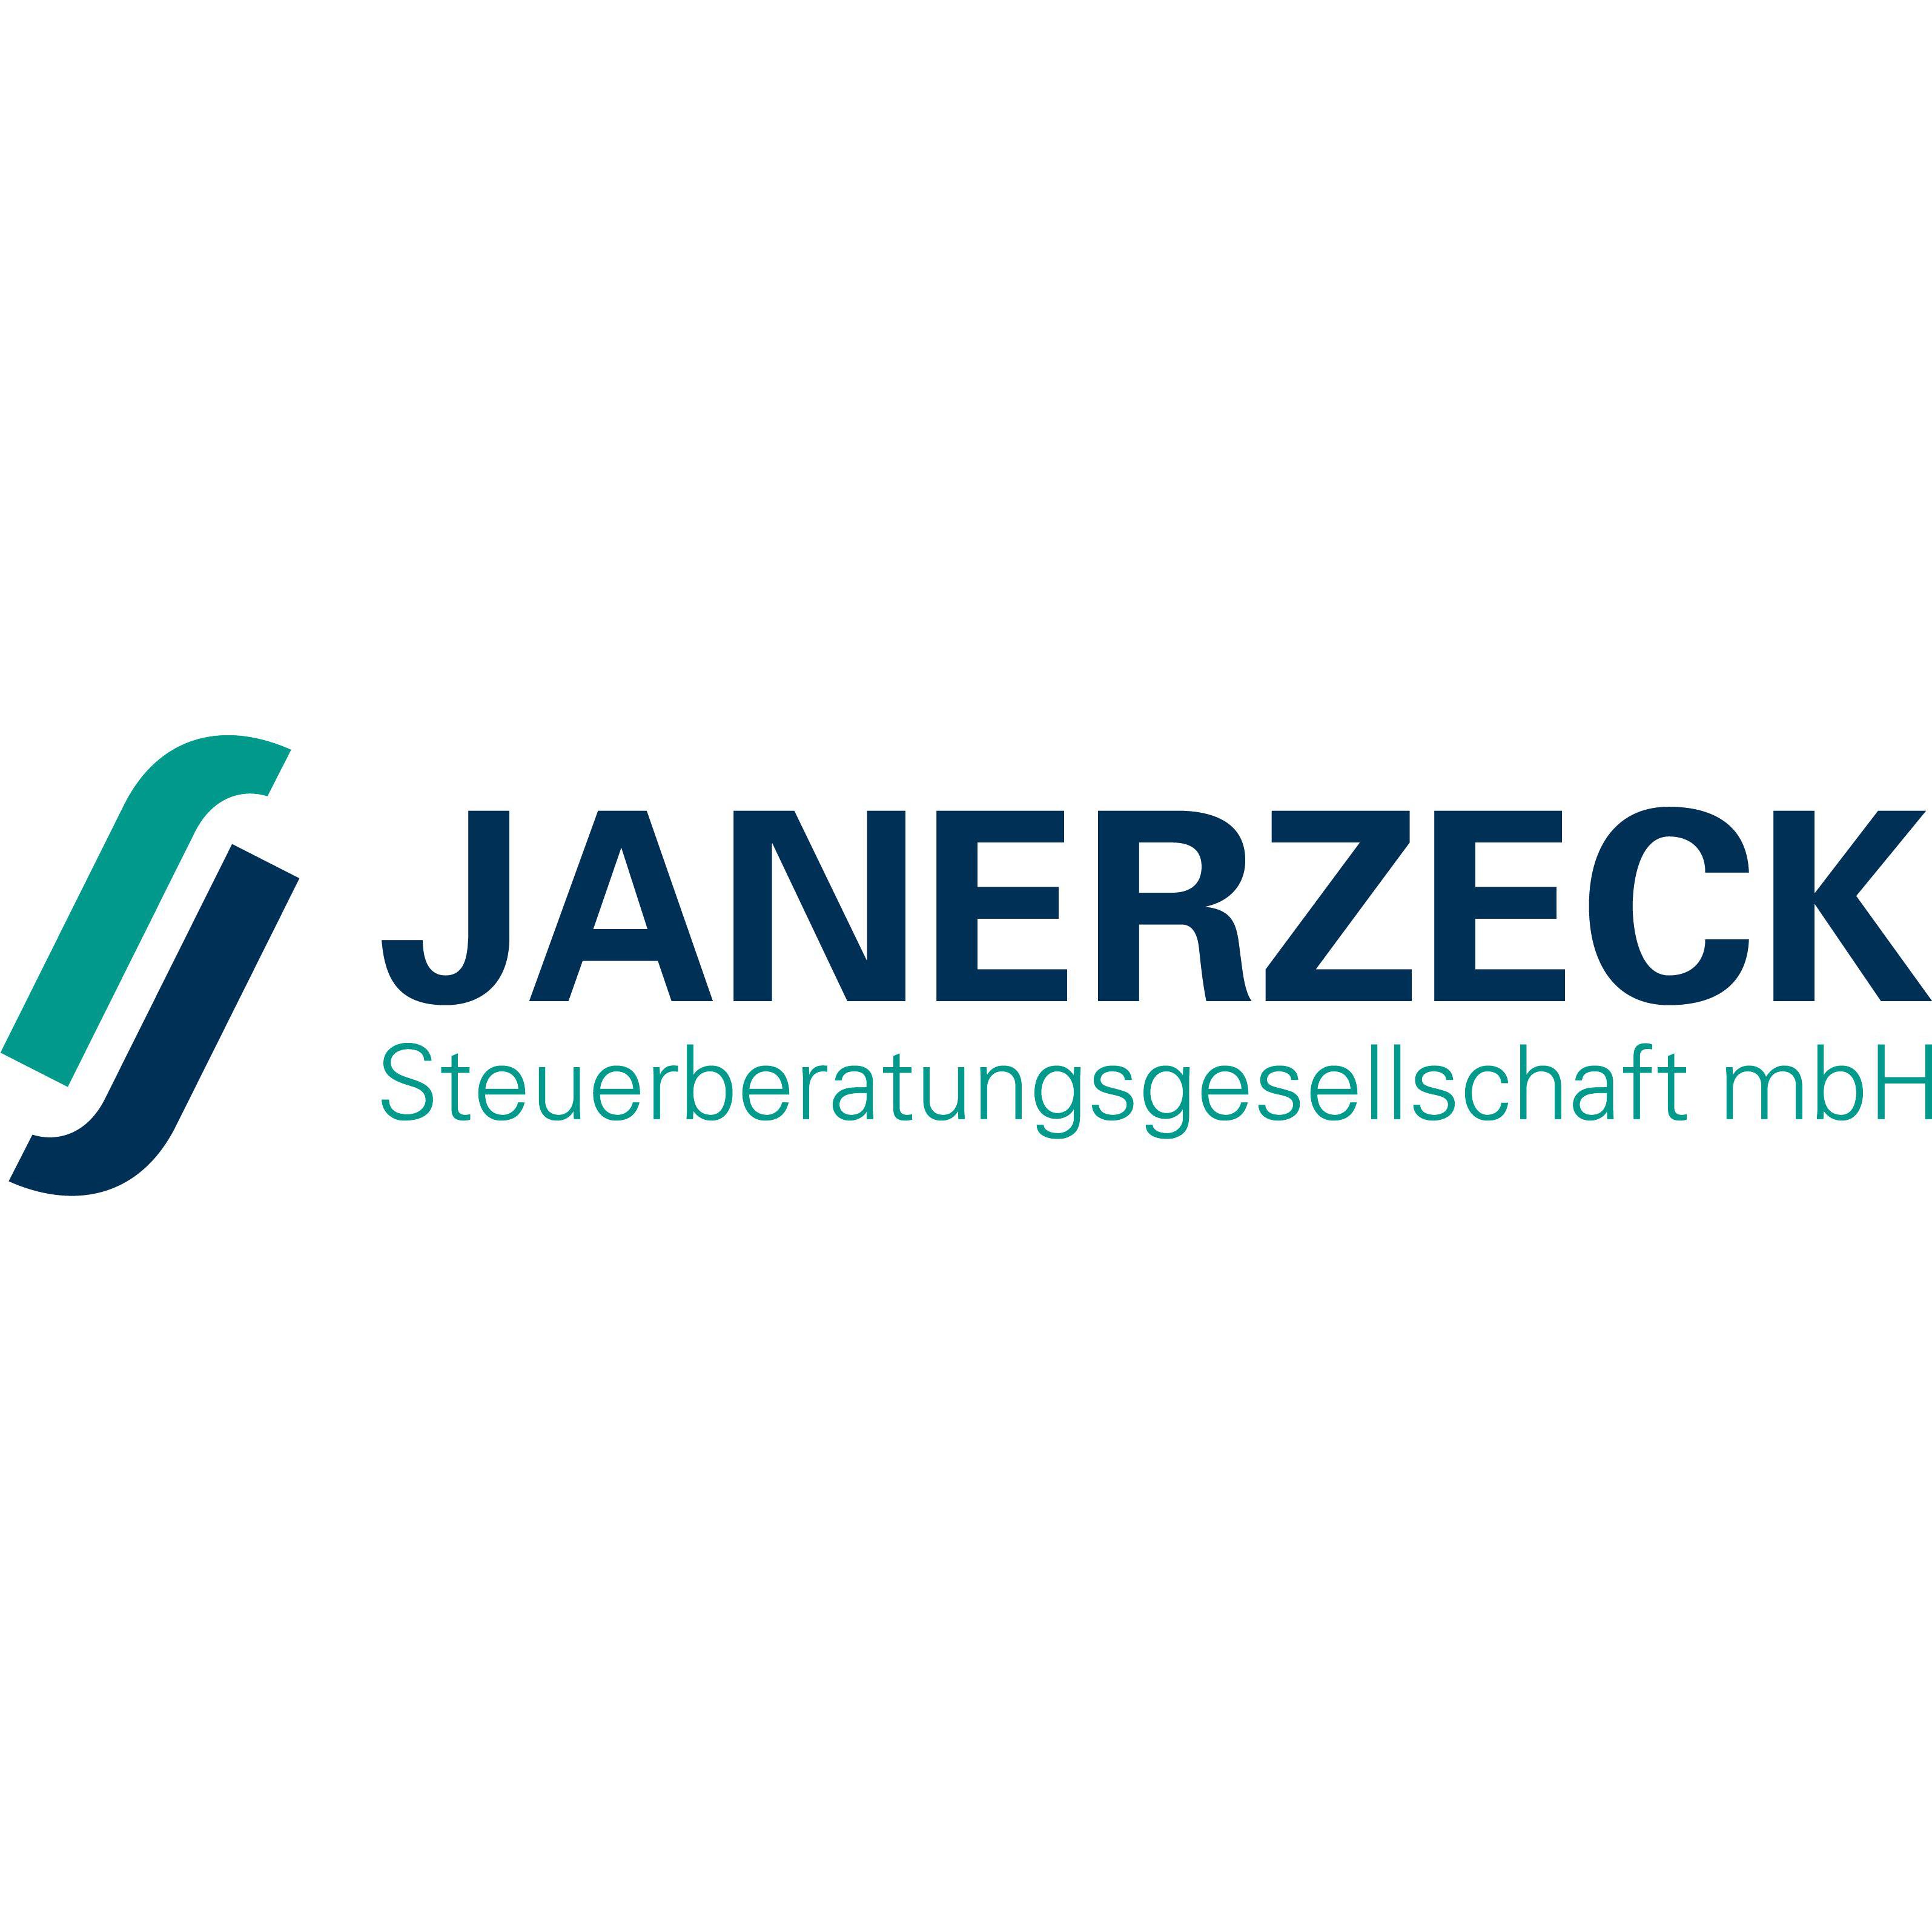 Logo gesellschaft mbH Janerzeck Steuerberatungs-